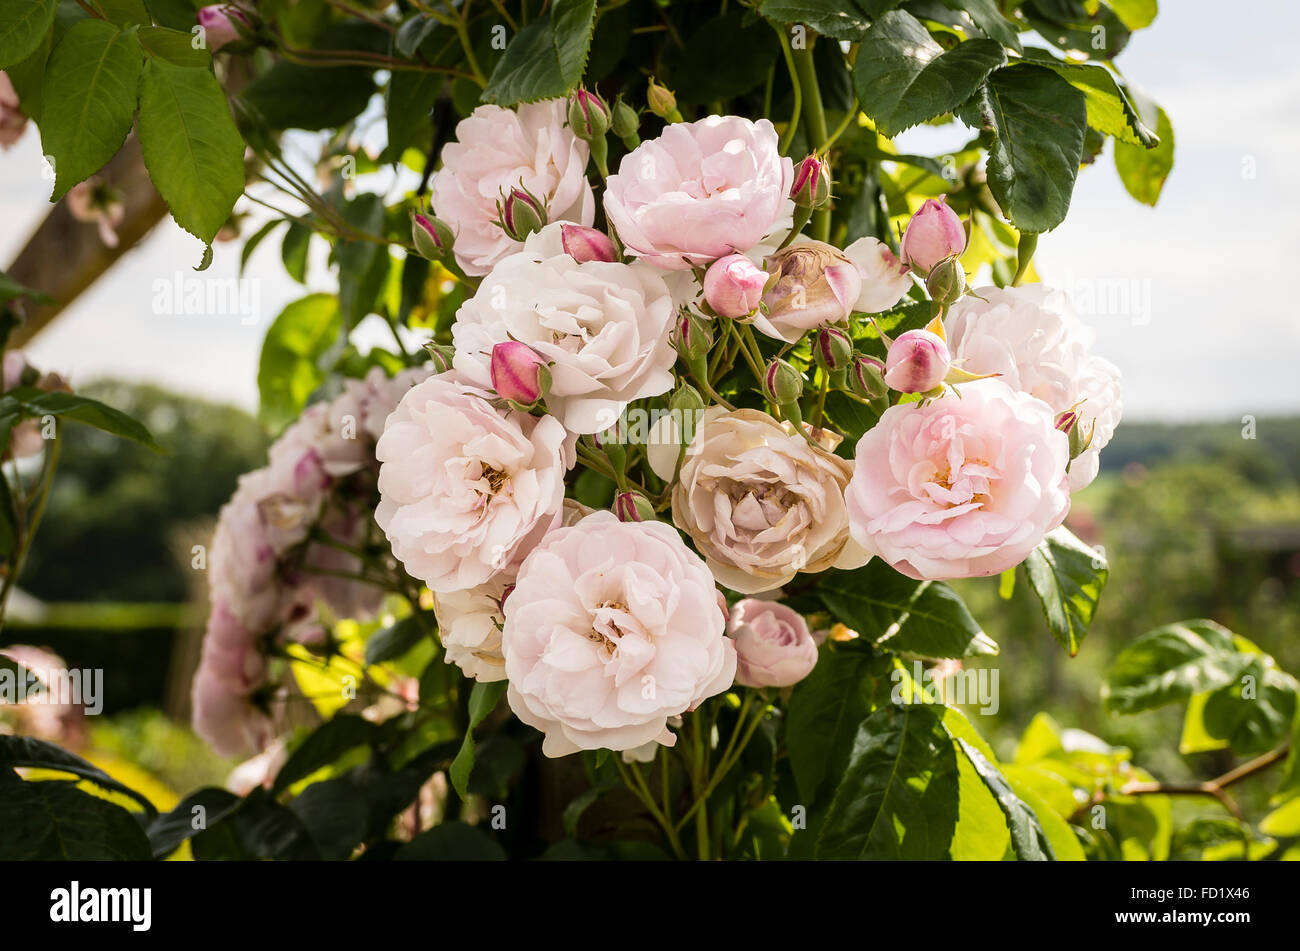 Rosa Blush Noisette flowering in June Stock Photo